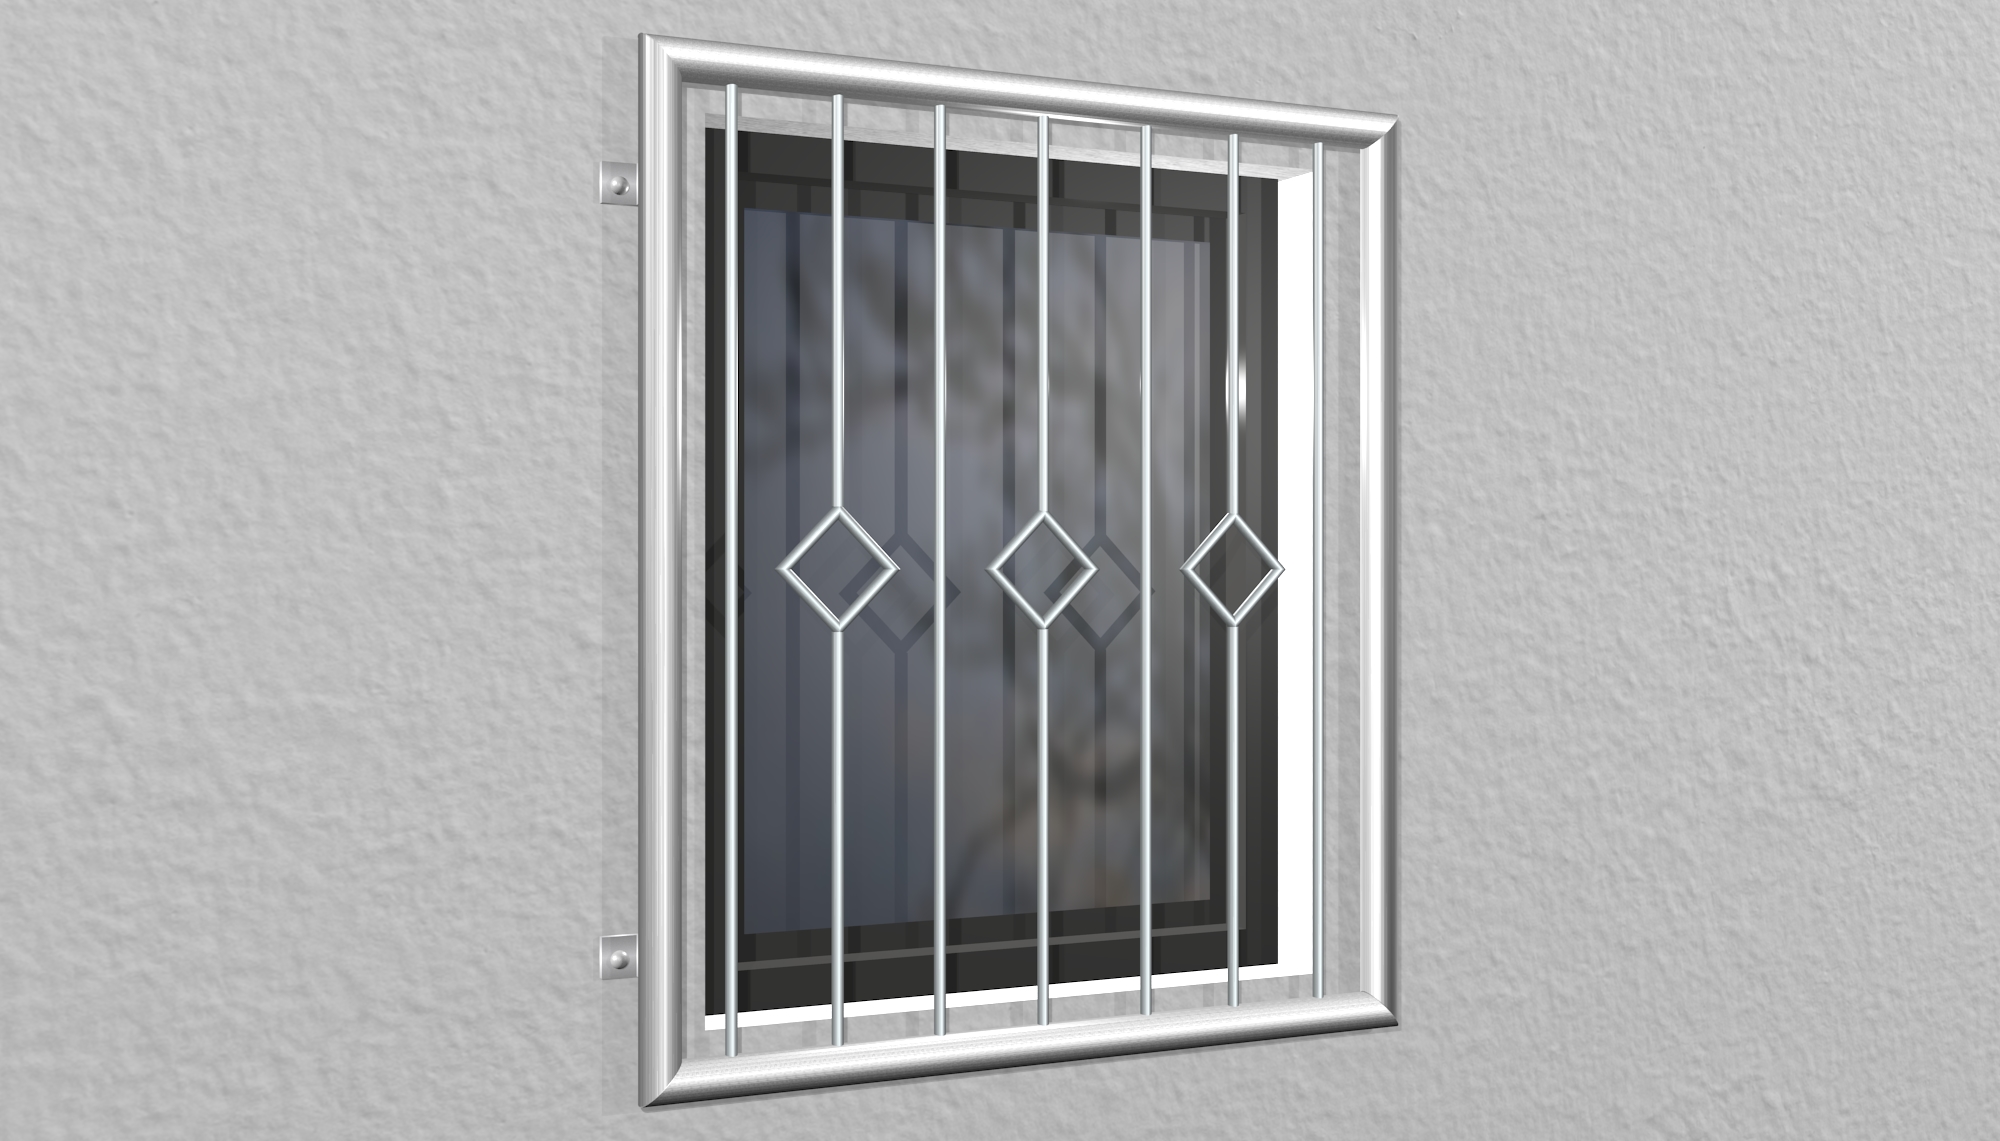 Grille de défense pour fenêtres en acier inoxydable carreau barre 